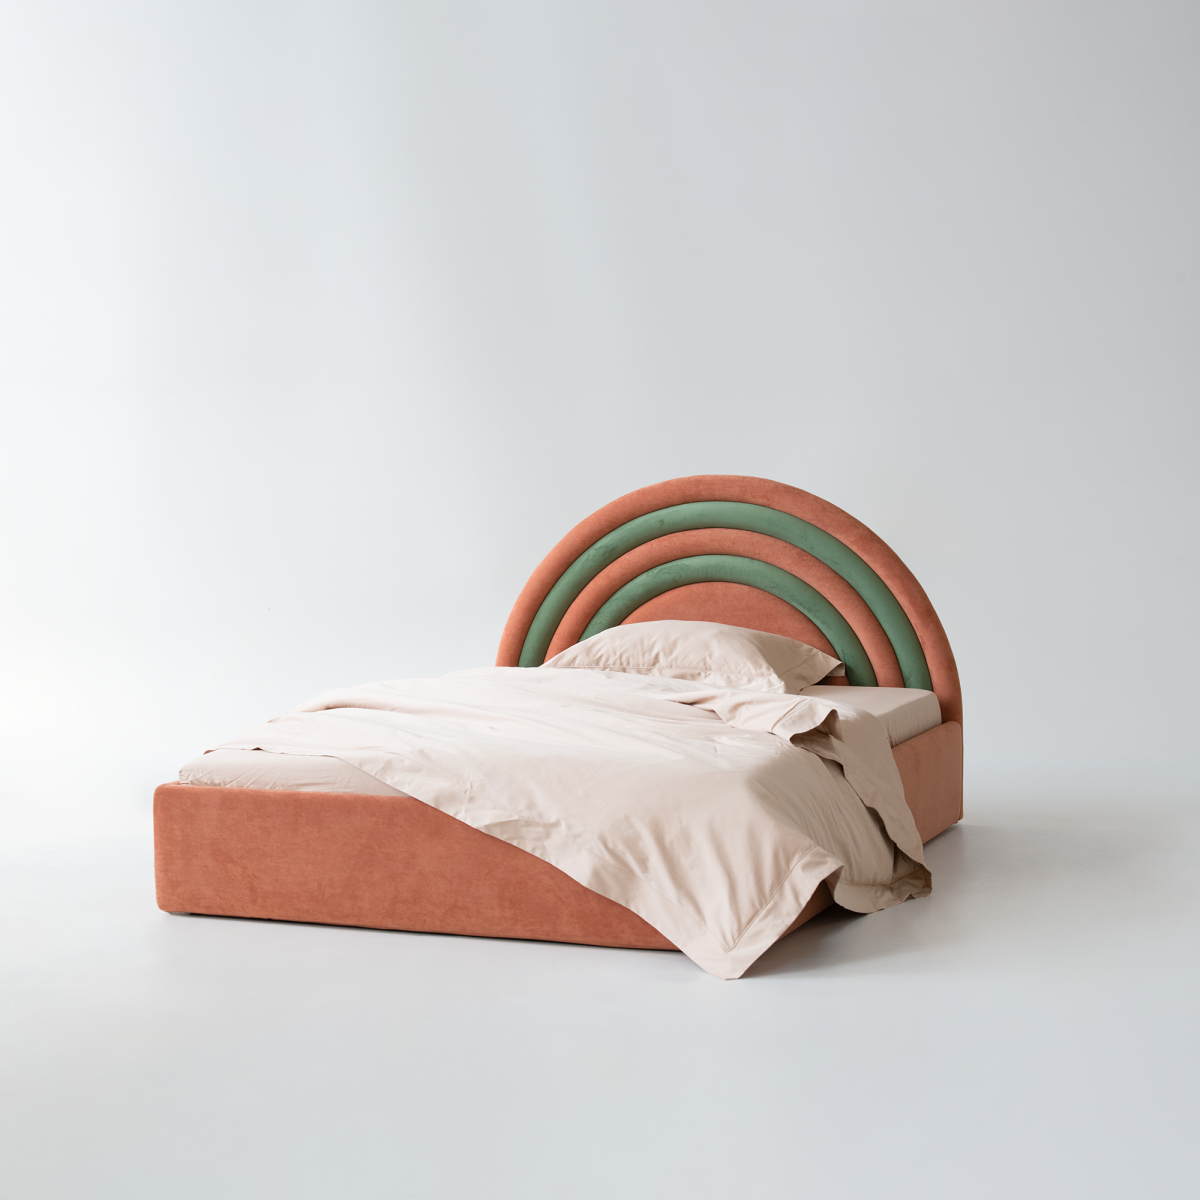 Детская кровать в виде радуги из велюра на заказ